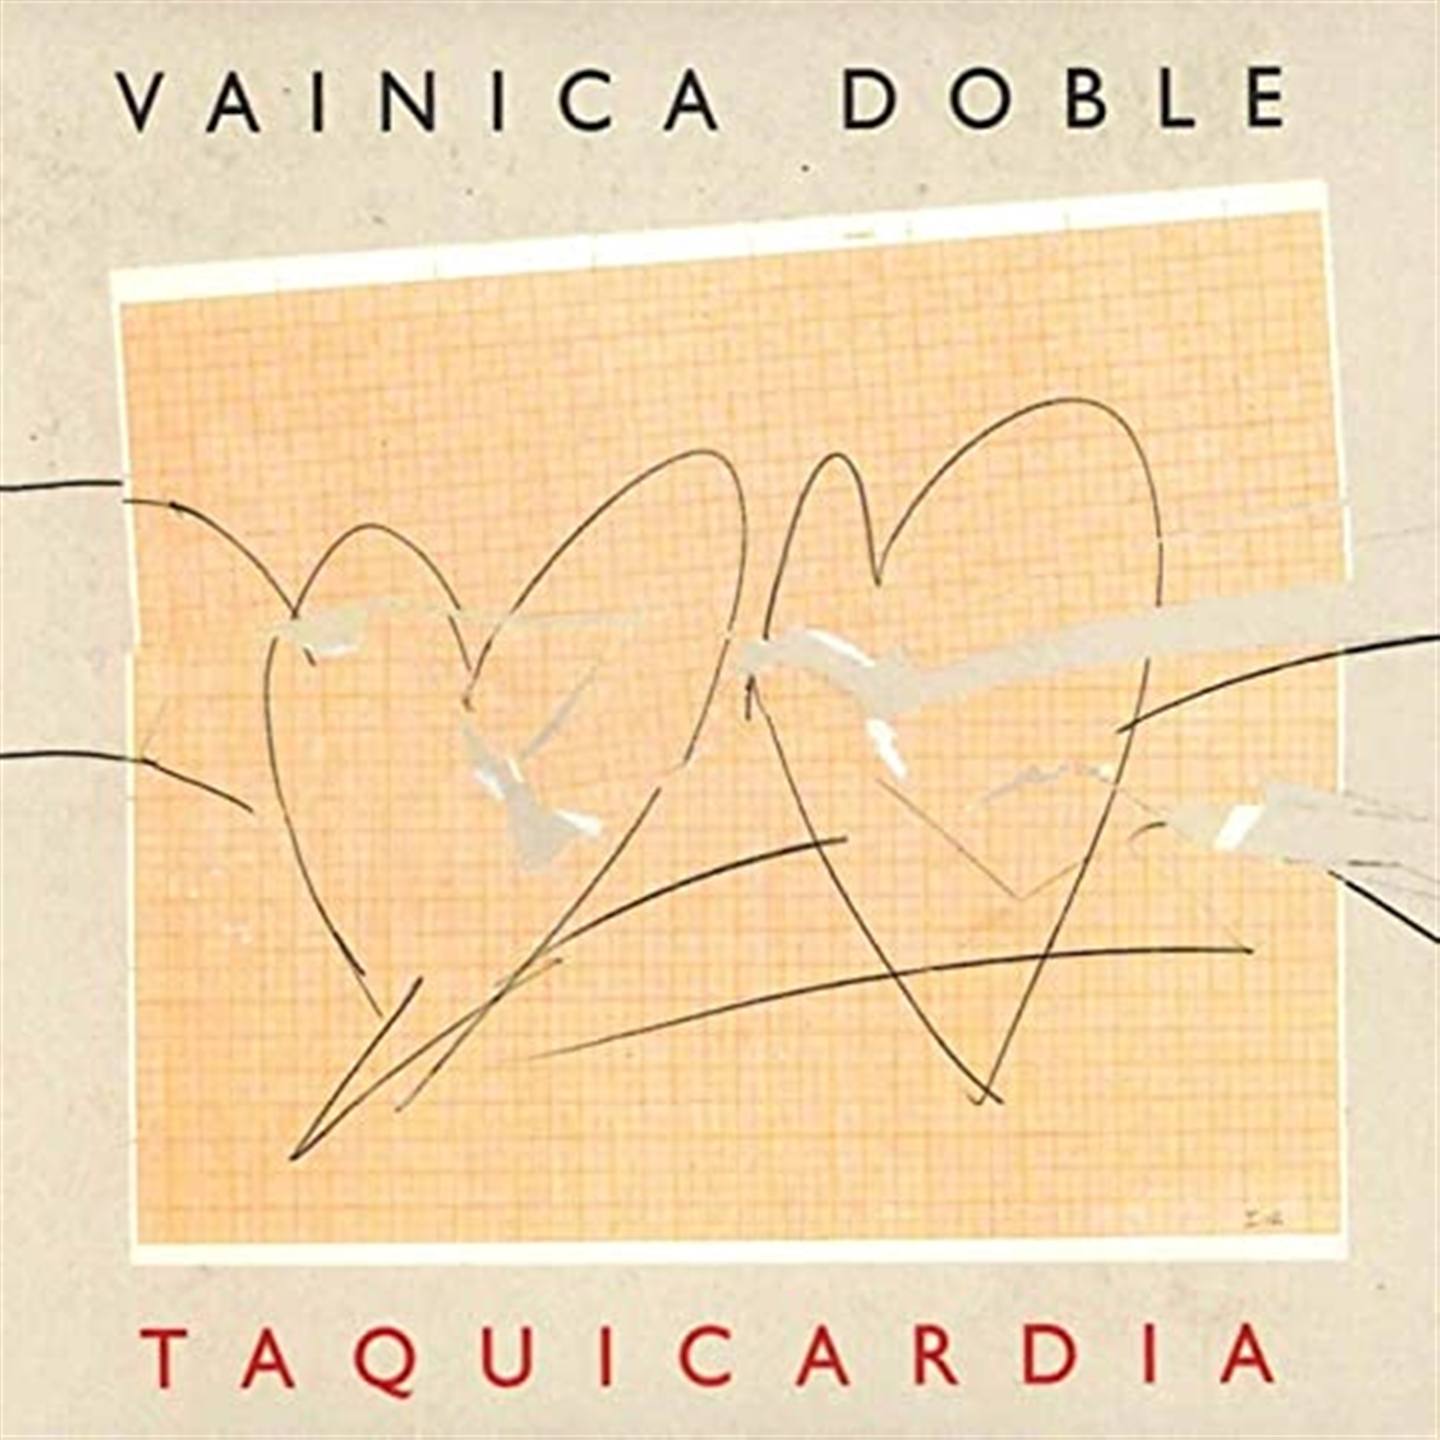 Doble Vainica - Taquicardia - Bild 1 von 1